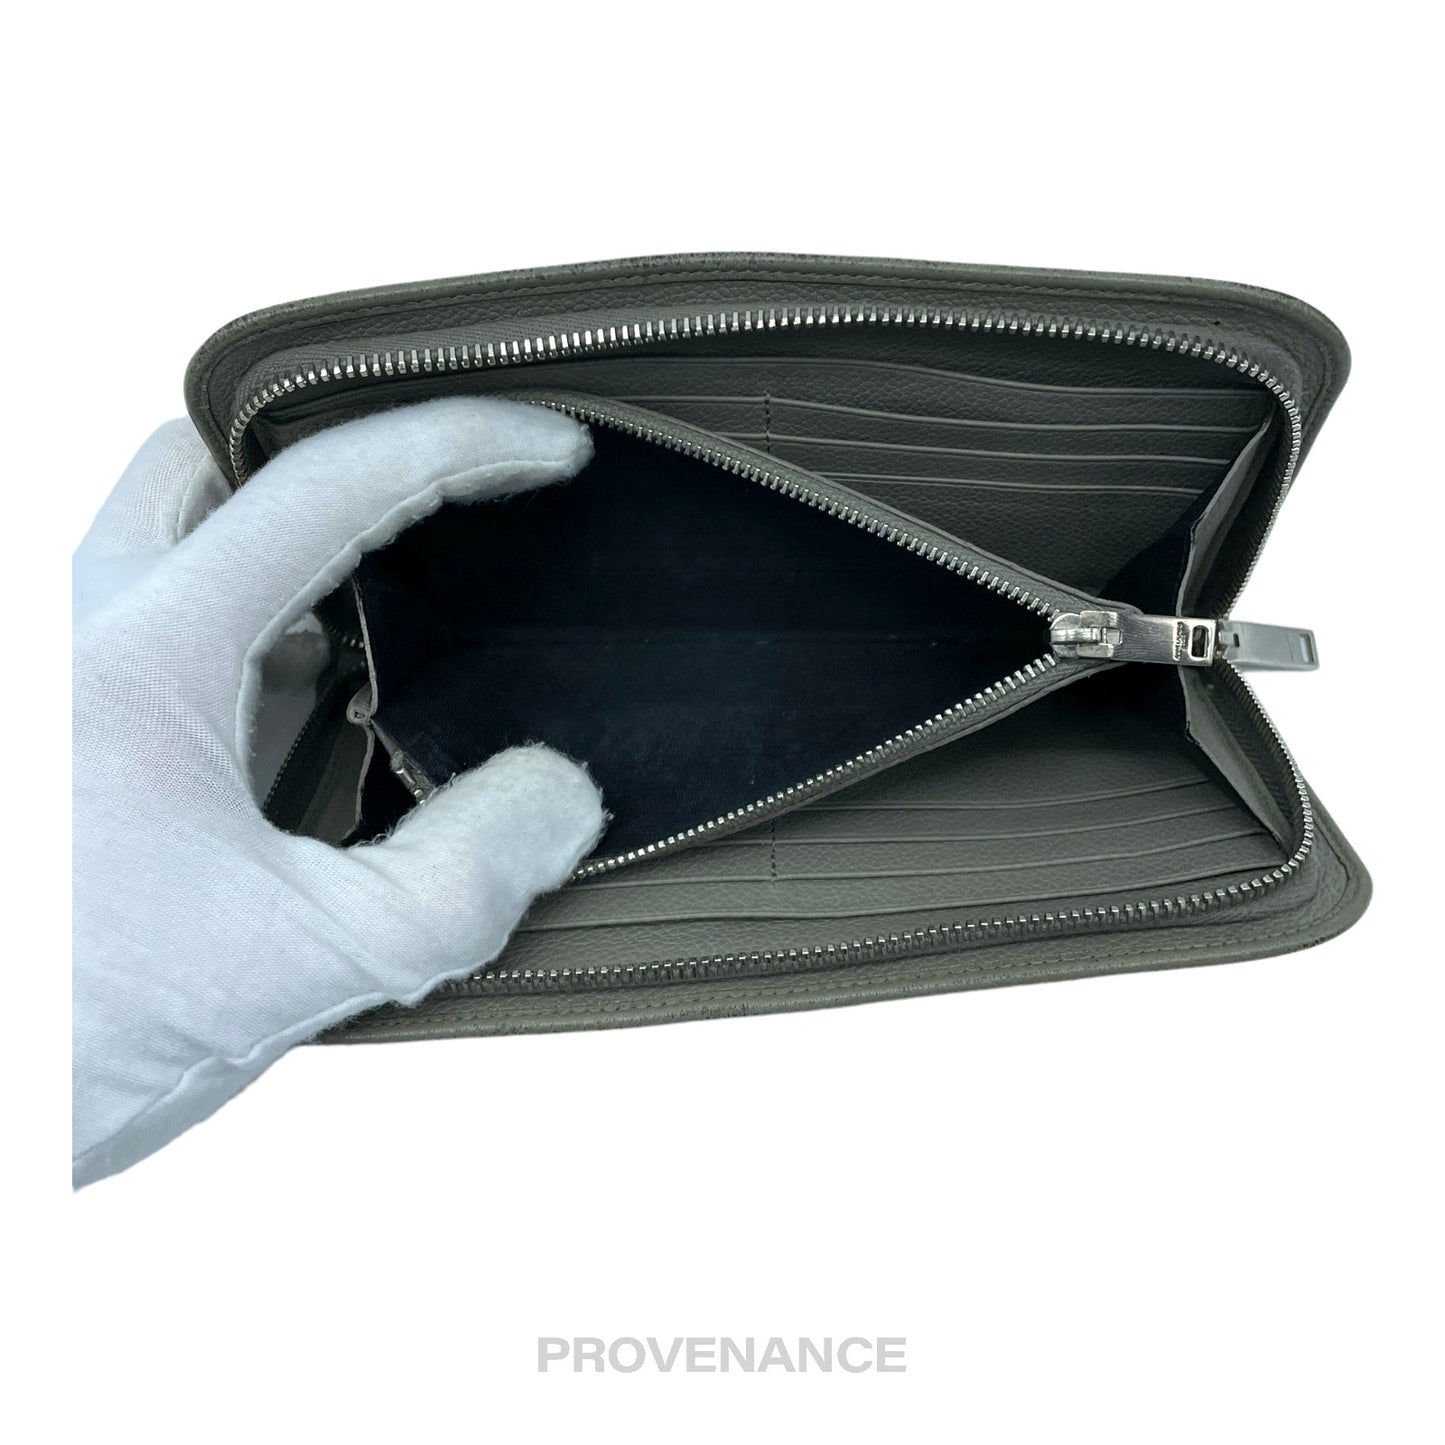 🔴 Saint Laurent Paris SLP Zip Long Wallet - Grey Leather